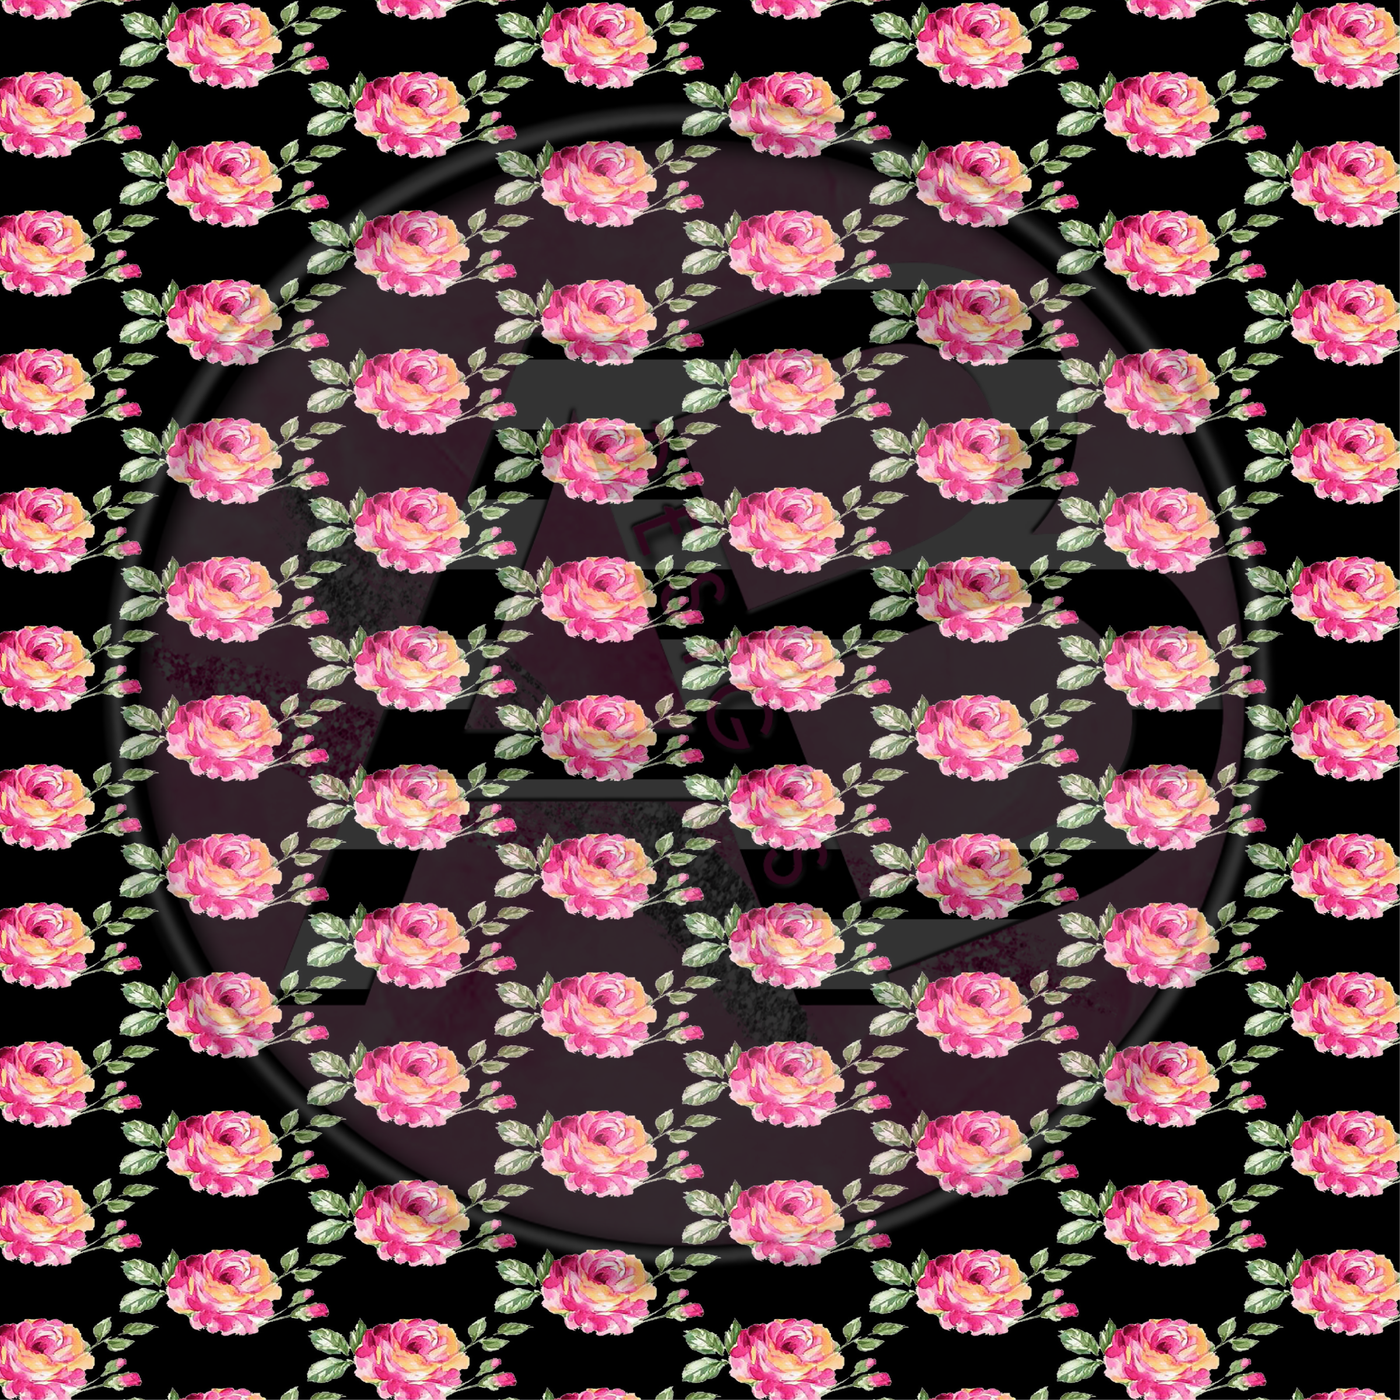 Adhesive Patterned Vinyl - Pink & Black Floral 08